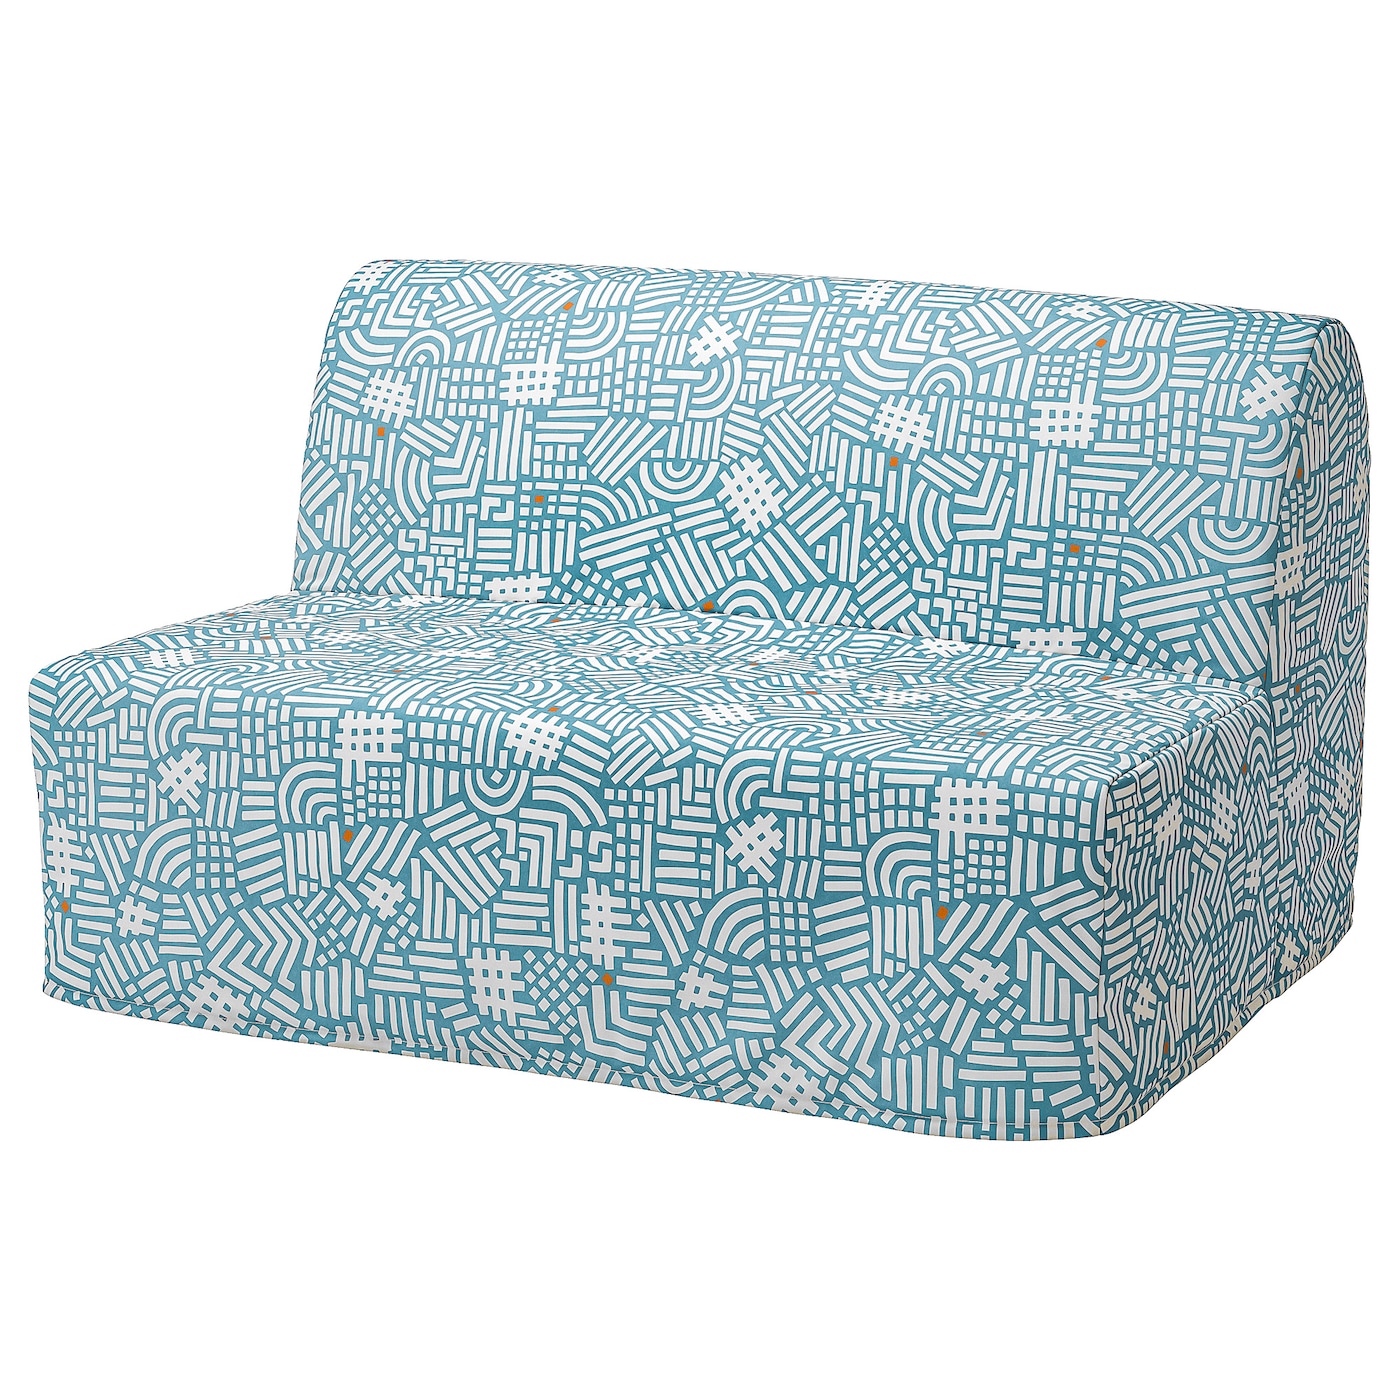 ЛИКСЕЛЕ ЛЕВОС 2 дивана-кровати с откидной спинкой, Тутстад разноцветный LYCKSELE LÖVÅS IKEA матрас для дивана первый мебельный винсен 3